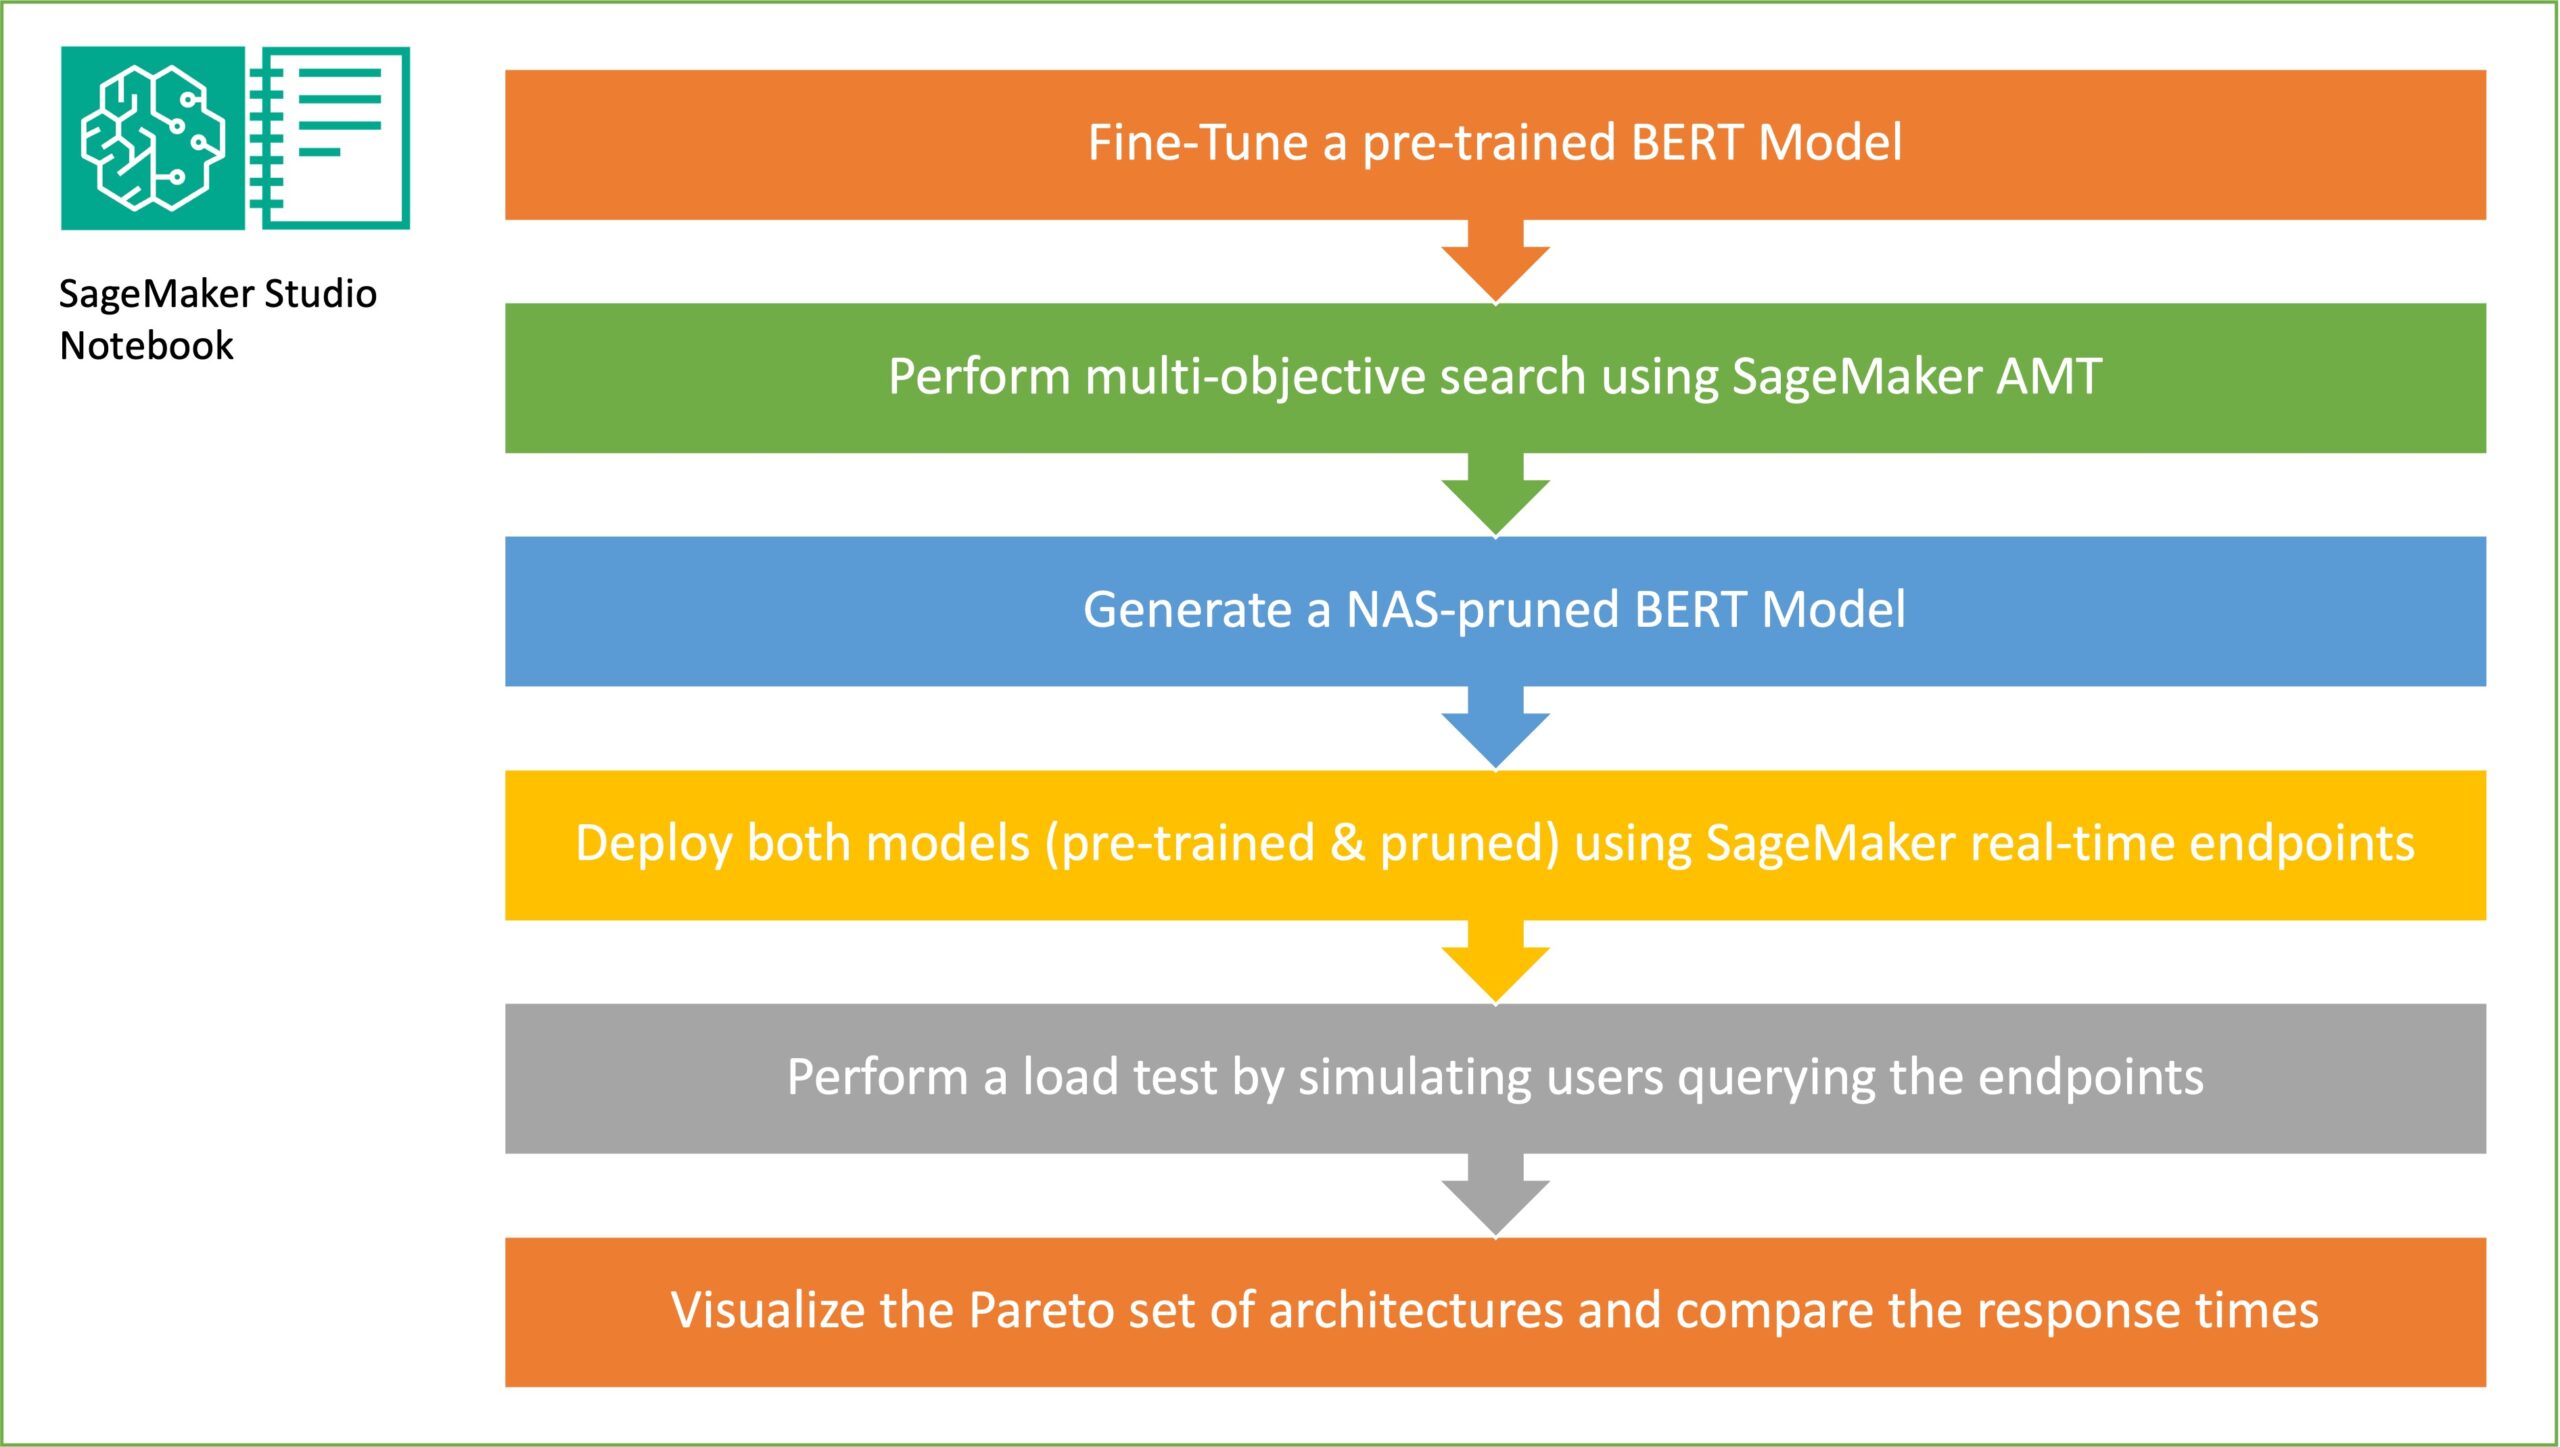 Сократите время вывода для моделей BERT, используя поиск по нейронной архитектуре и автоматическую настройку модели SageMaker | Веб-сервисы Amazon